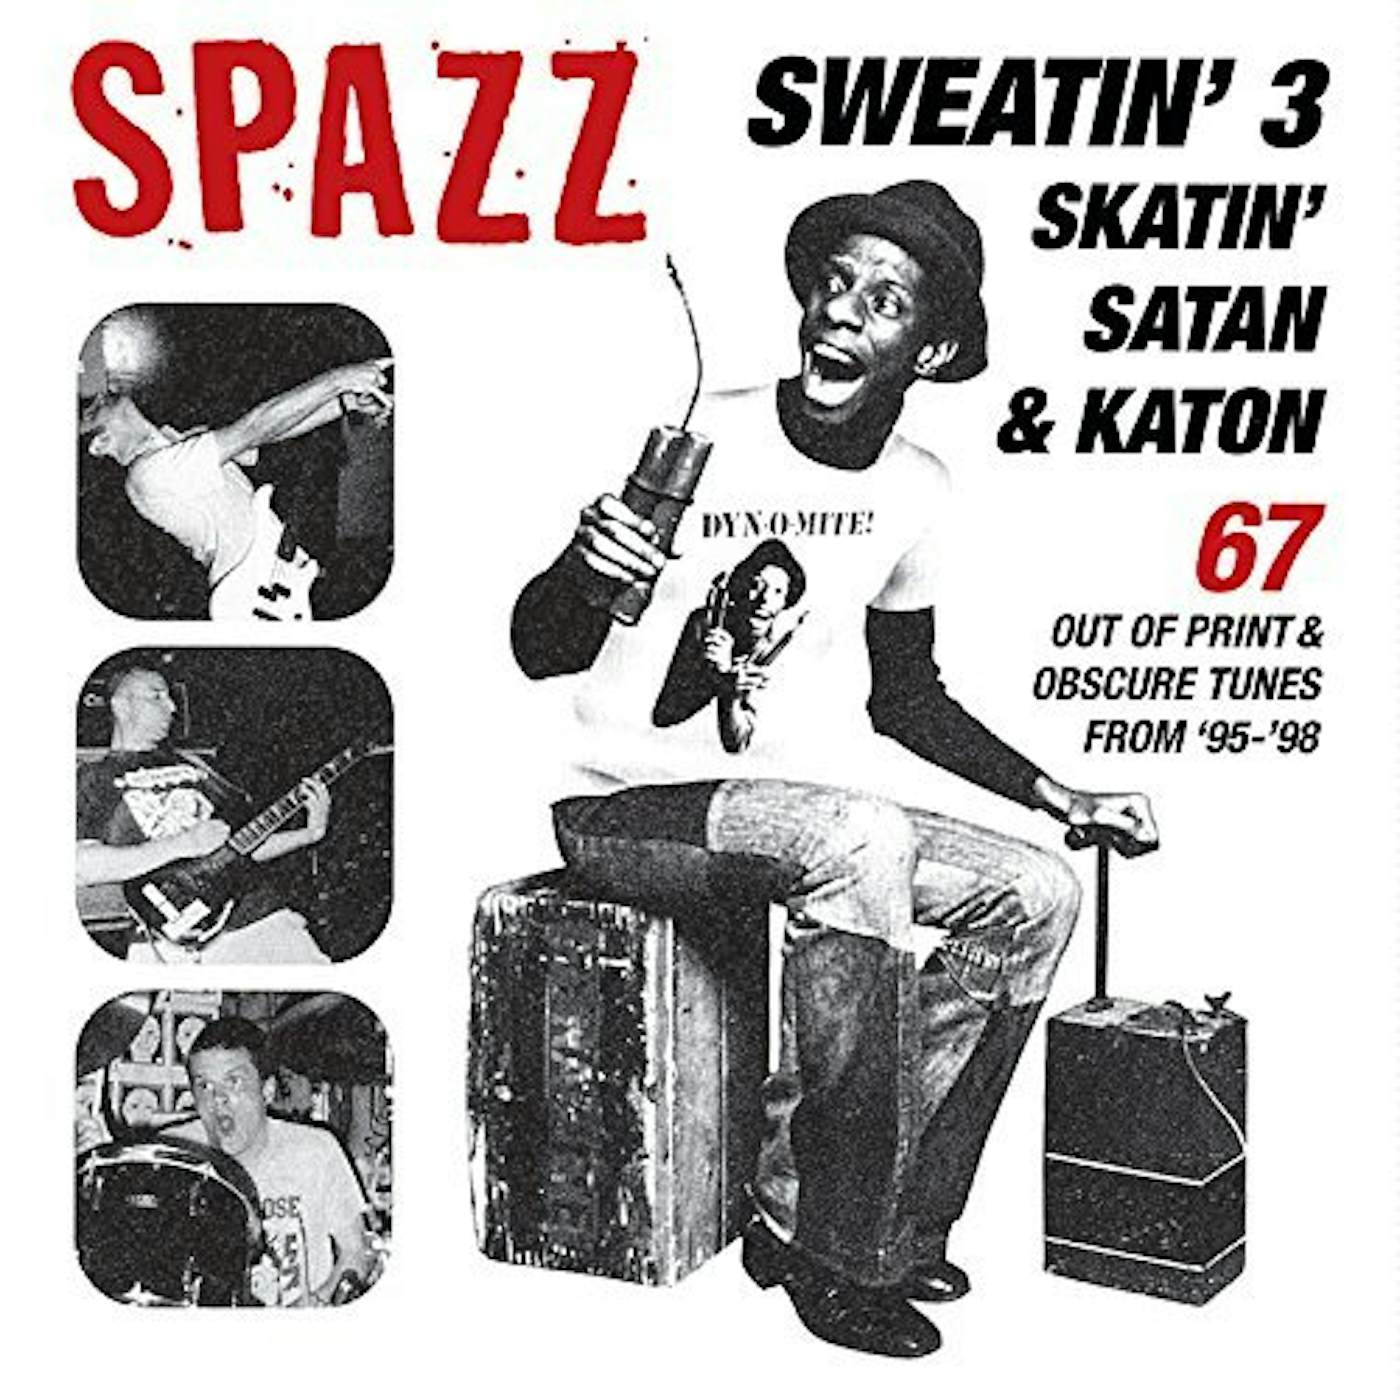 Spazz SWEATIN 3: SKATIN' SATAN & KATON CD